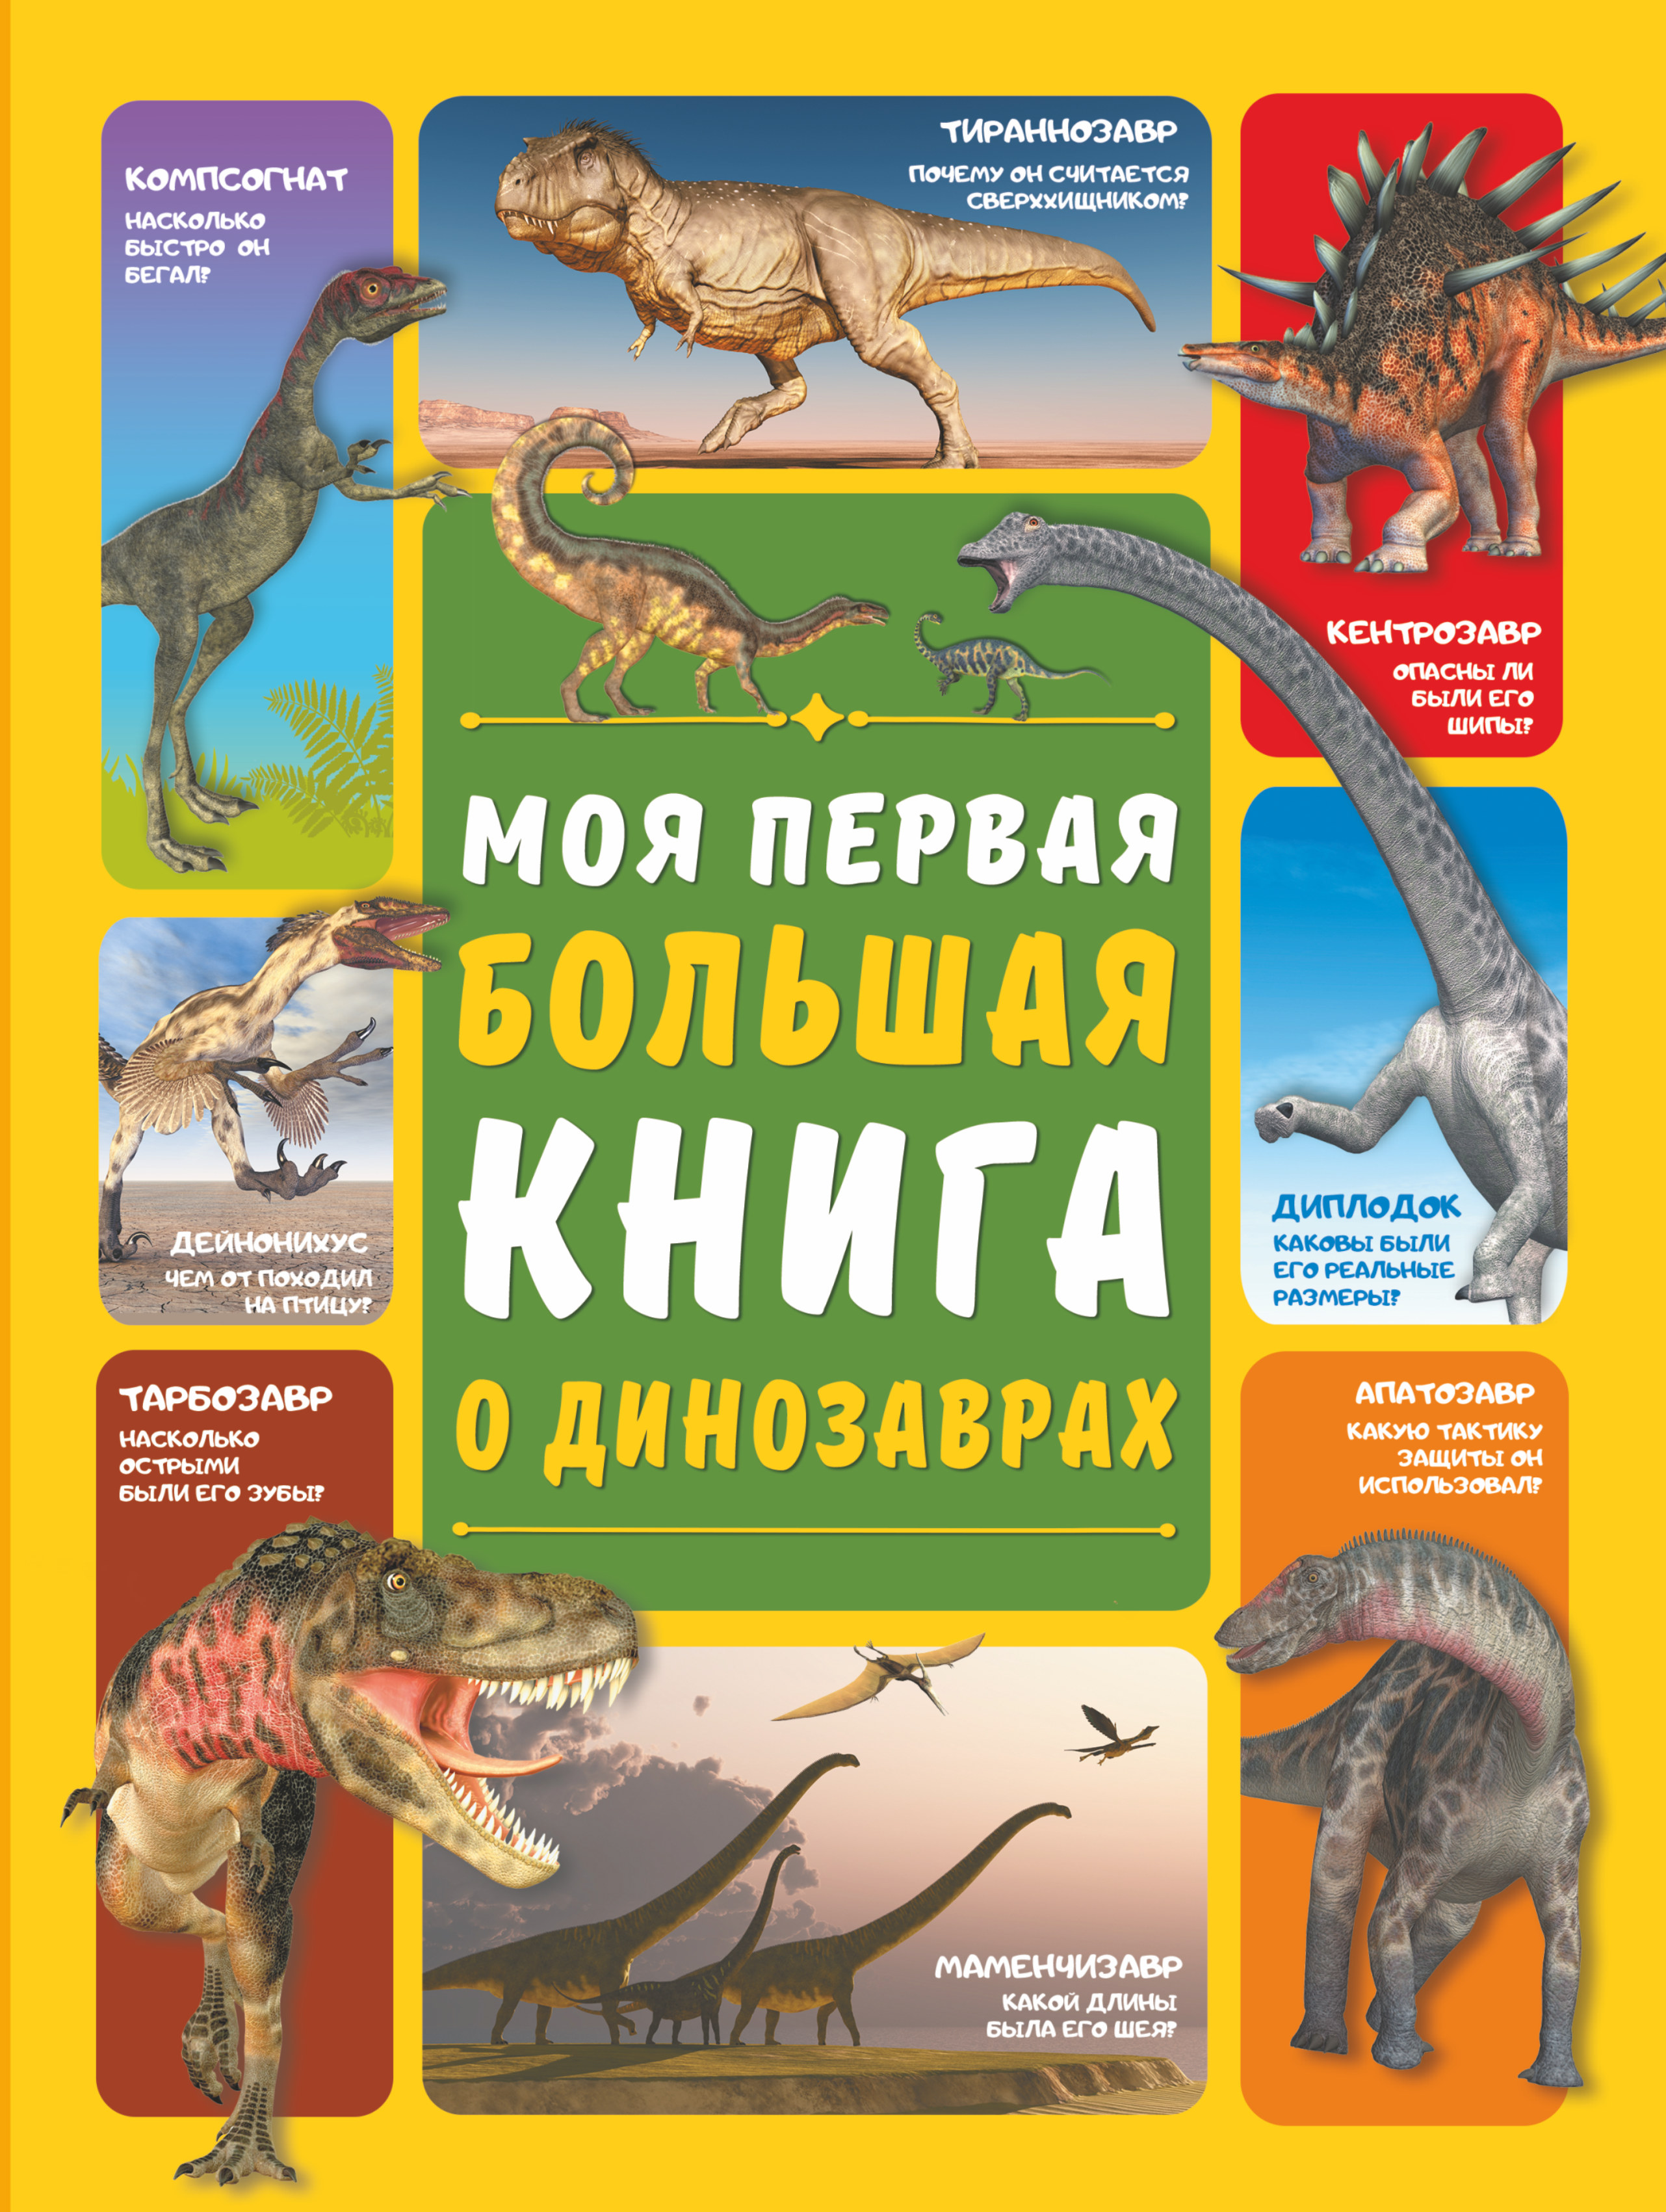 моя большая космическая авантюра романовская о Моя первая большая книга о динозаврах